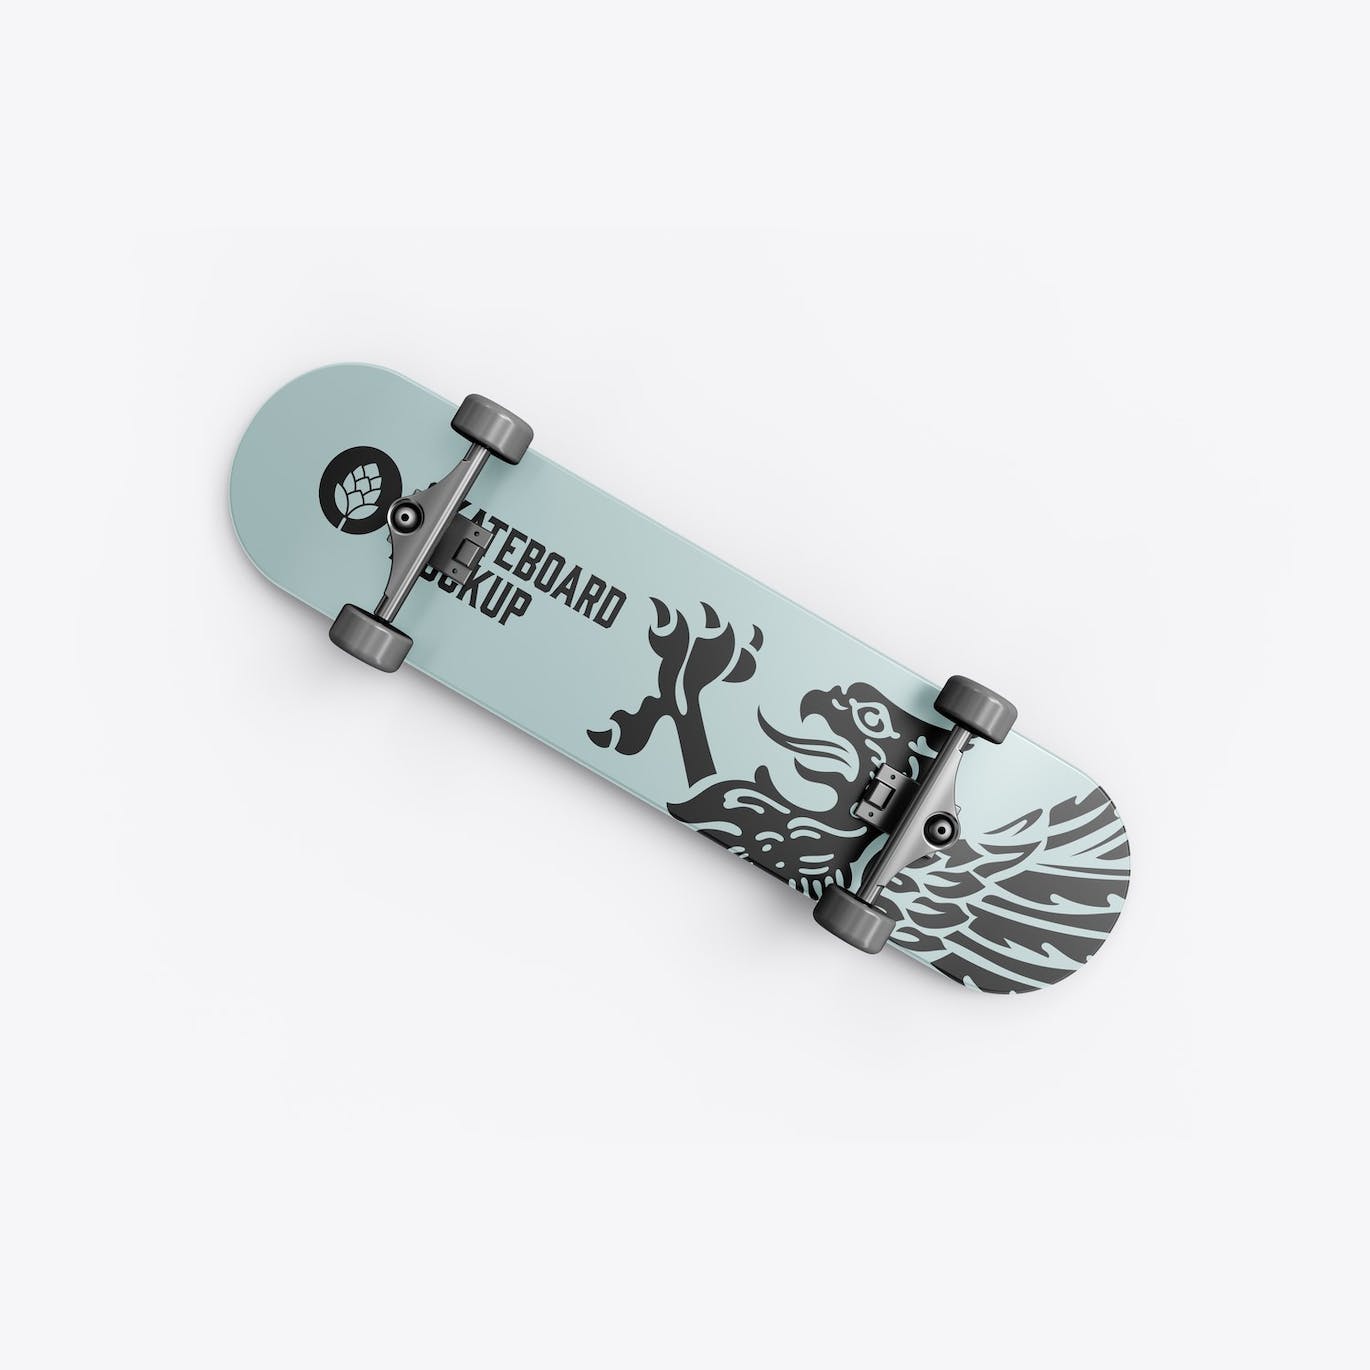 骑行滑板品牌设计样机 Skateboard Mockup 样机素材 第2张